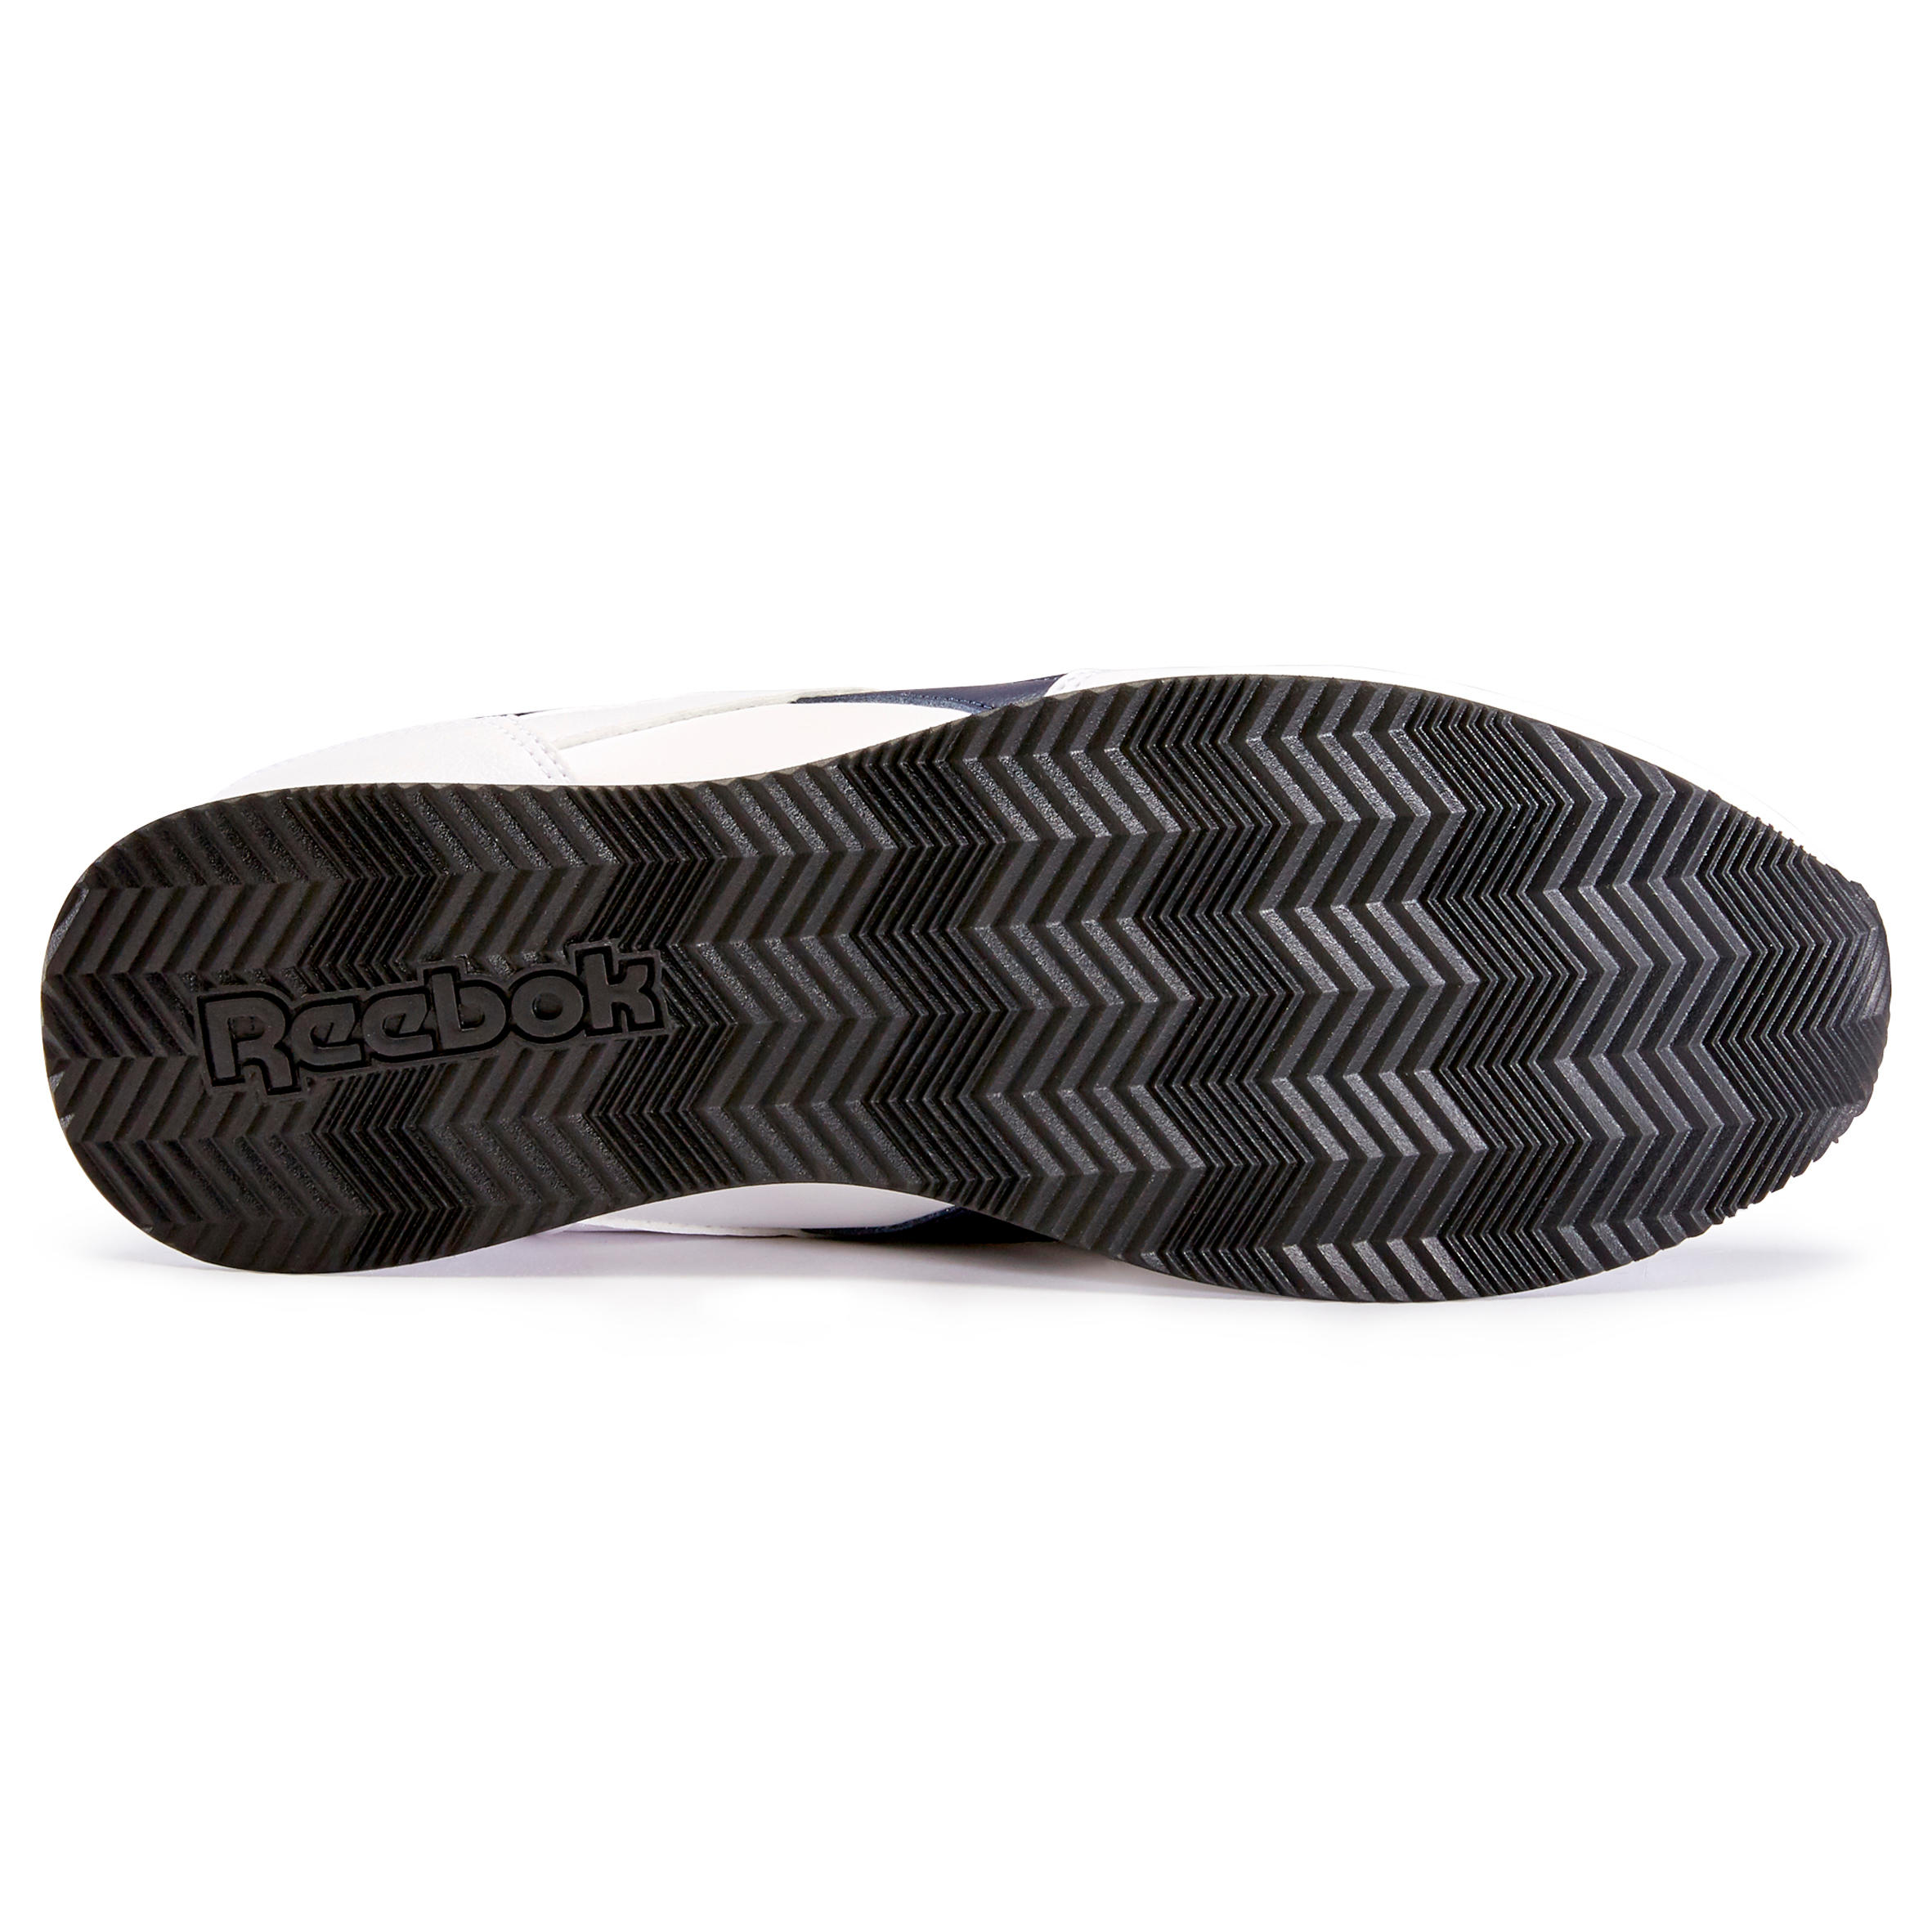 Men's Urban Walking Shoes Reebok Royal Classic - white 6/8